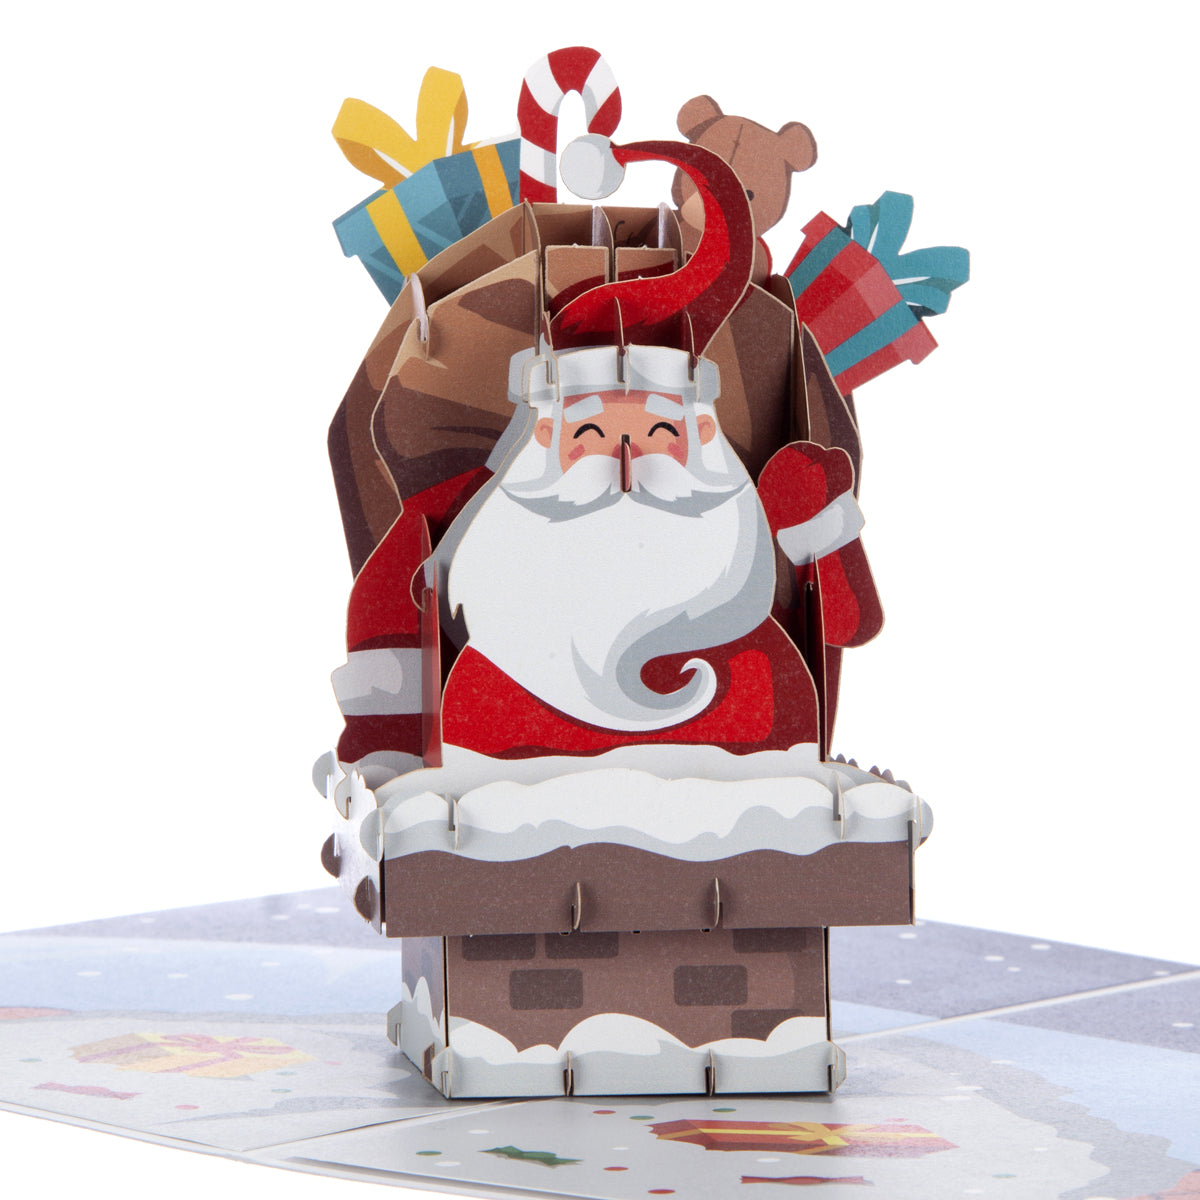 Santa Pop Up Christmas Card Close Up Image